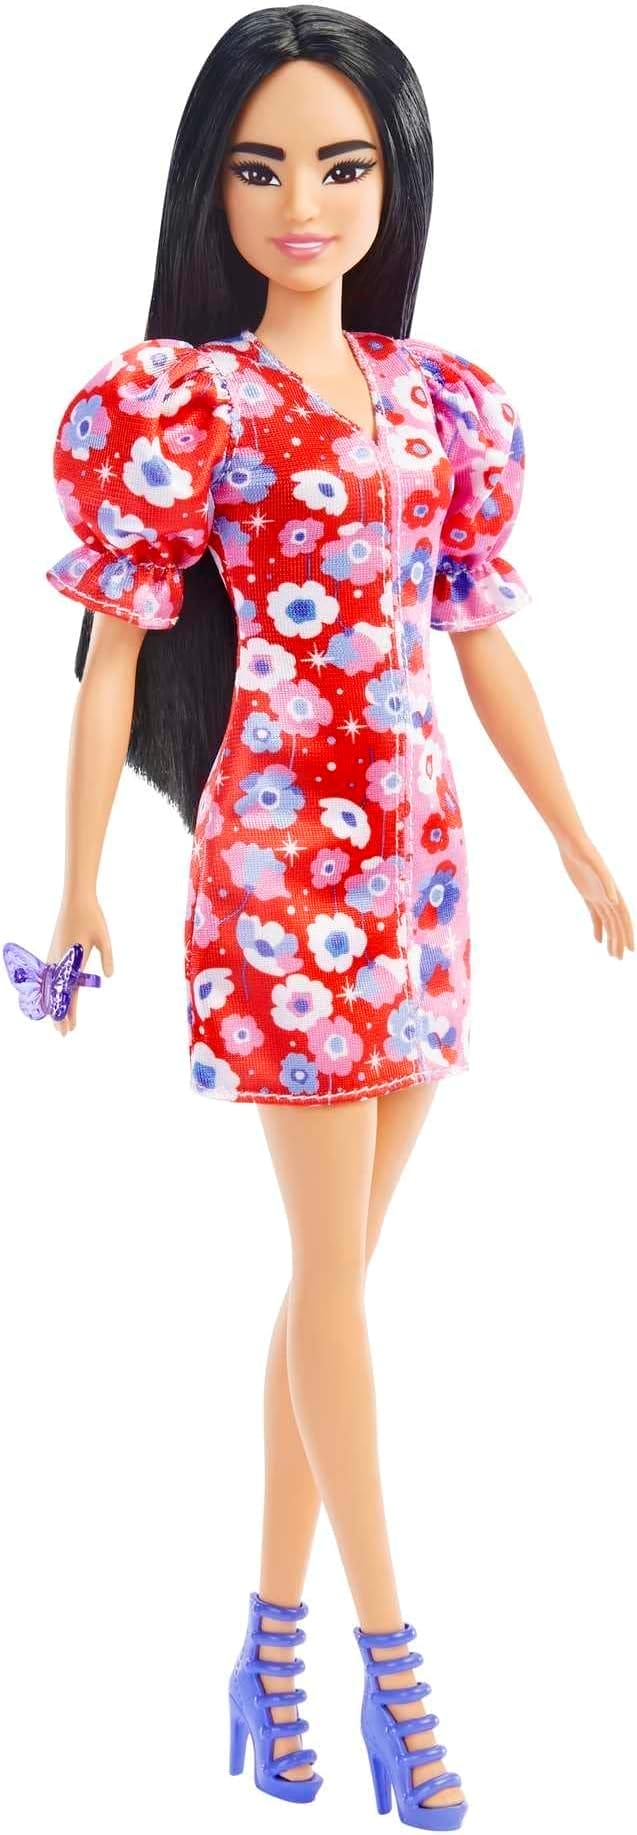 Barbie Fashionistas Pop 177 met lang zwart haar en een color-block bloemenjurk met pofmouwen, hoge paarse hakken, vlinderring, speelgoed voor kinderen van 3 - 8 jaar